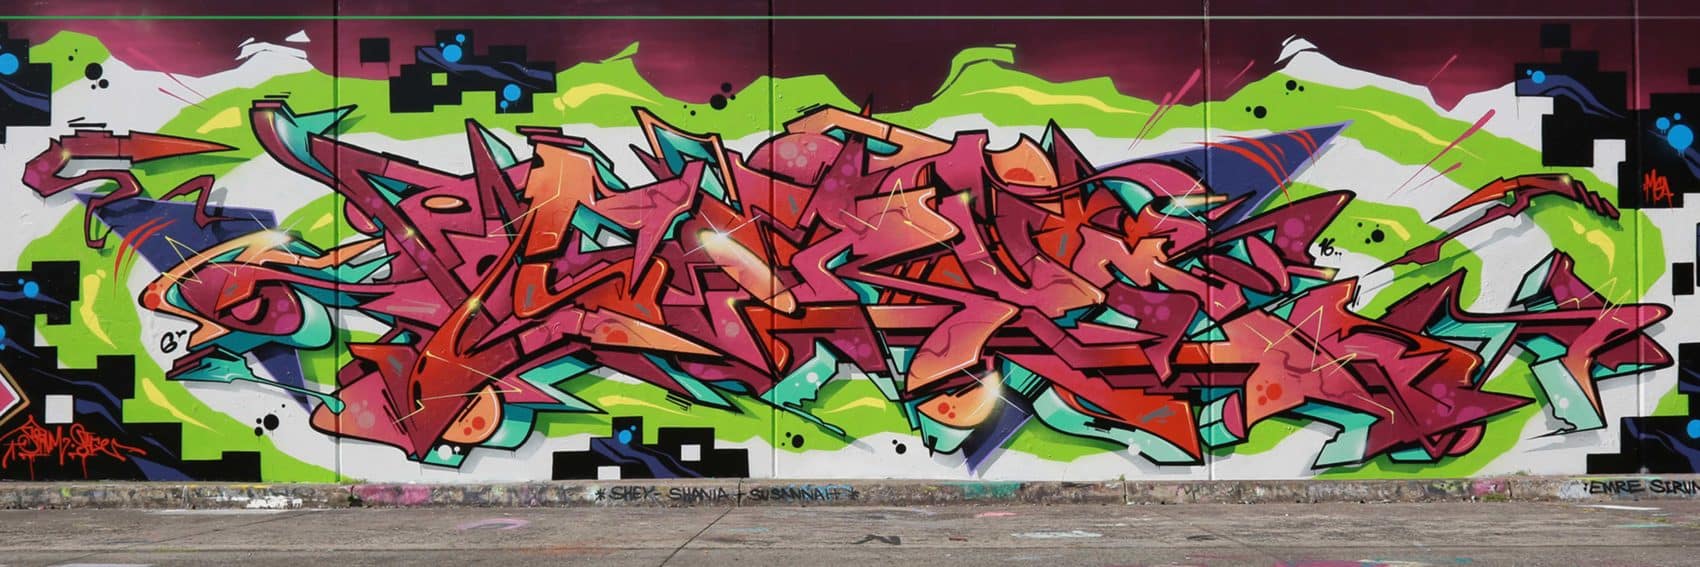 sirum graffiti